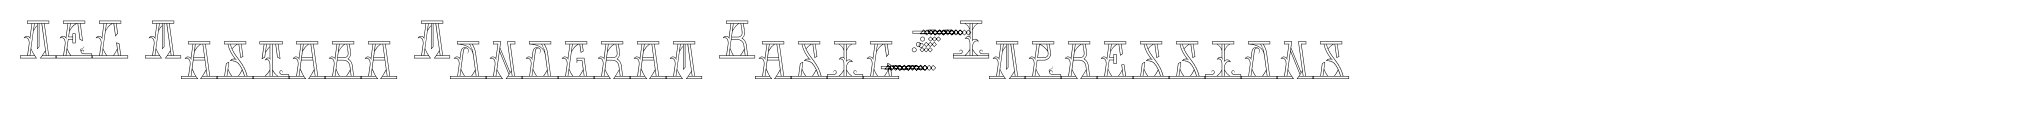 MFC Mastaba Monogram Basic 25000 Impressions image